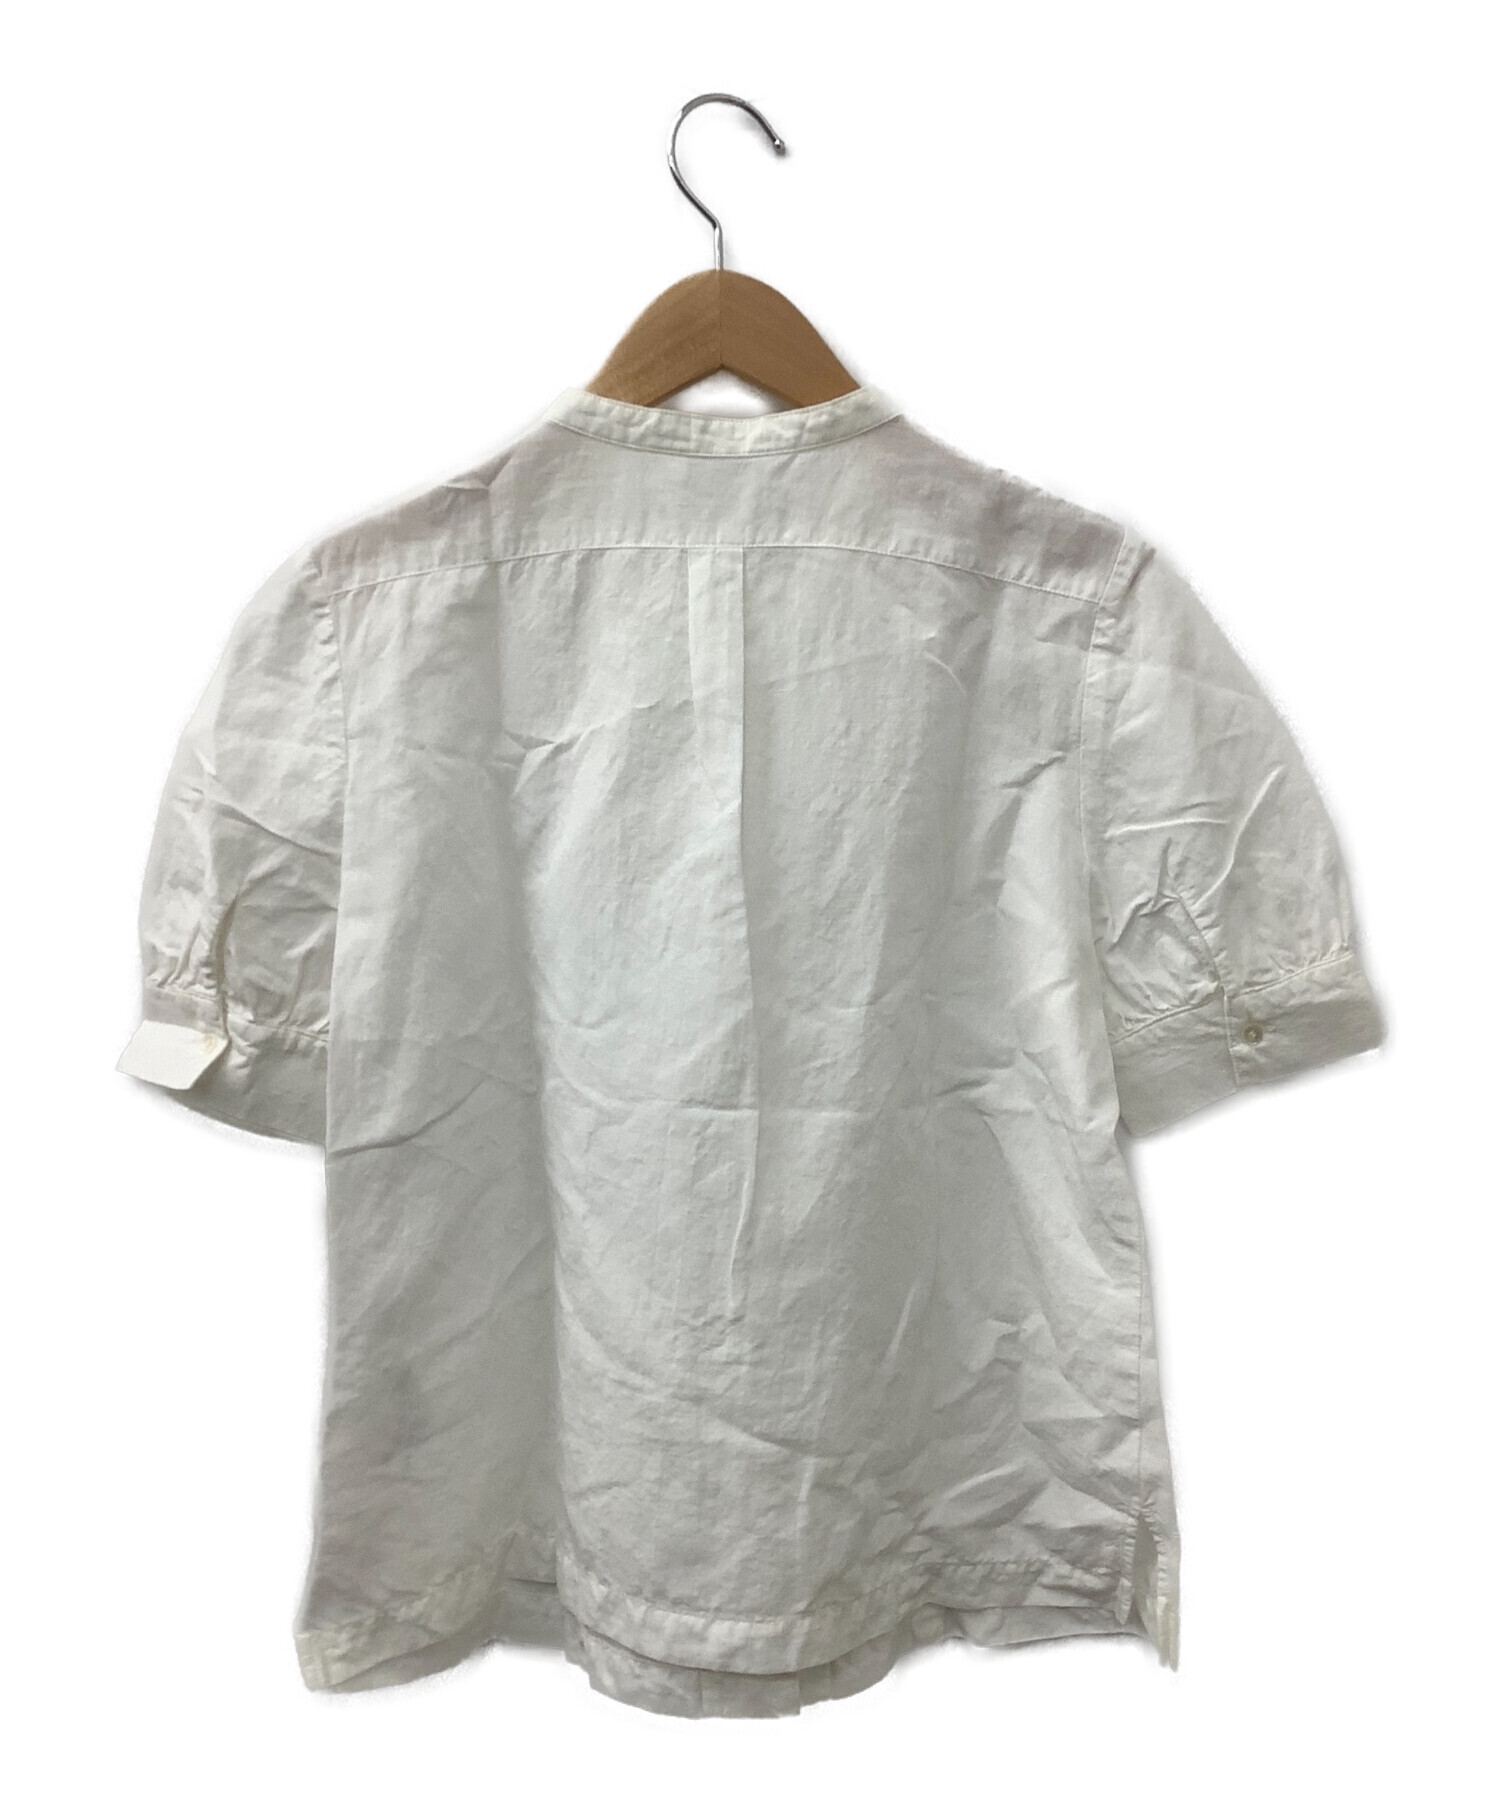 Lisette (リゼッタ) リネン混切替バンドカラーシャツ ホワイト サイズ:36